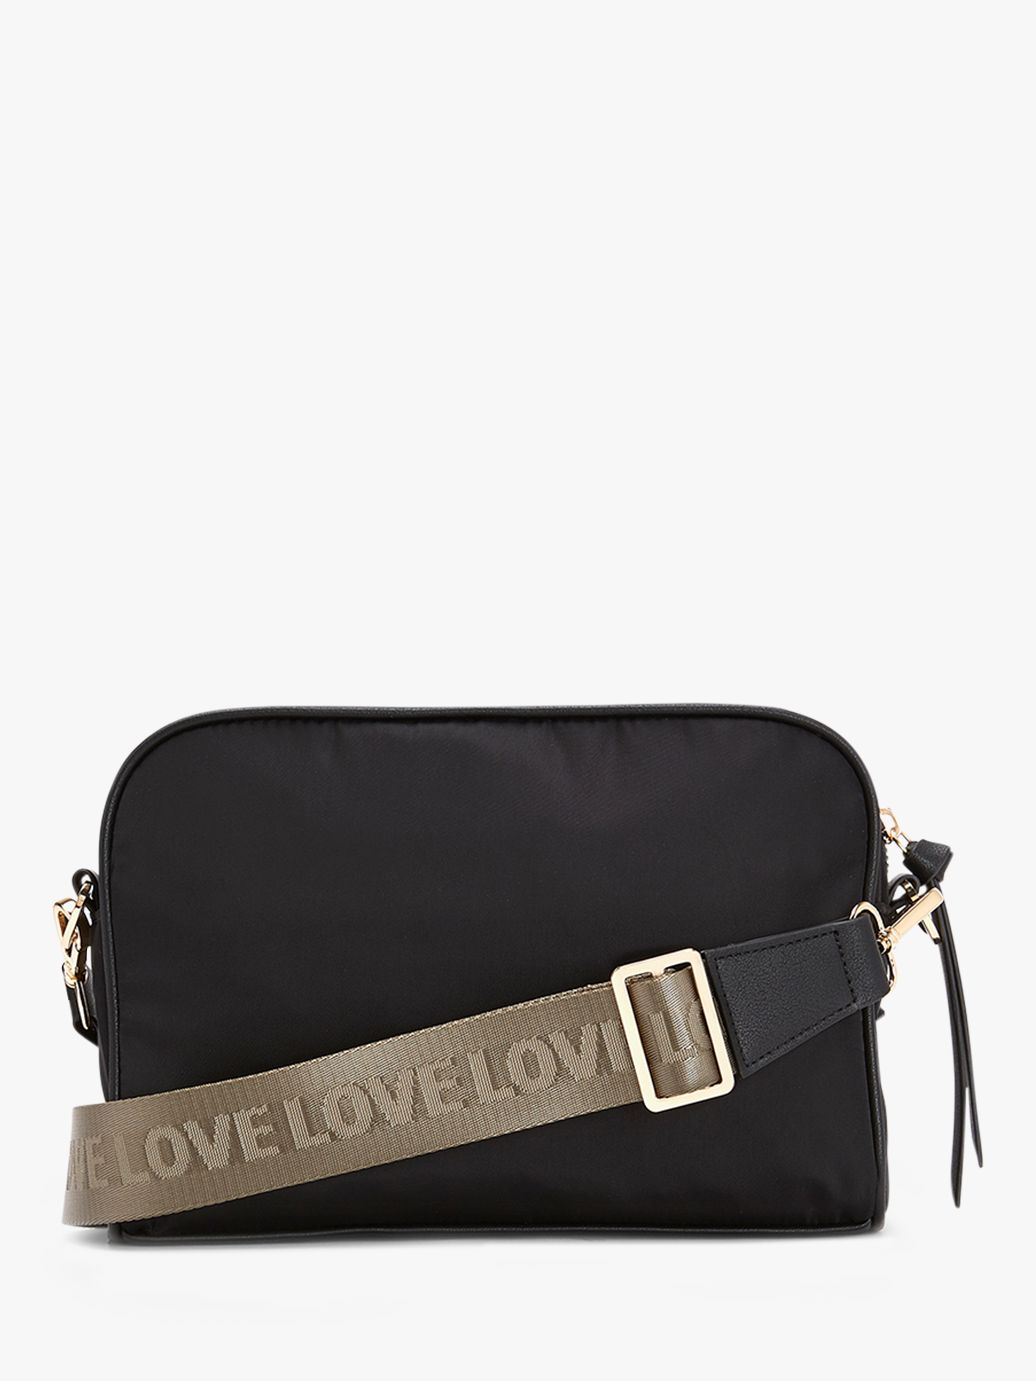 Mint Velvet Nylon Cross Body Bag, Black, One Size